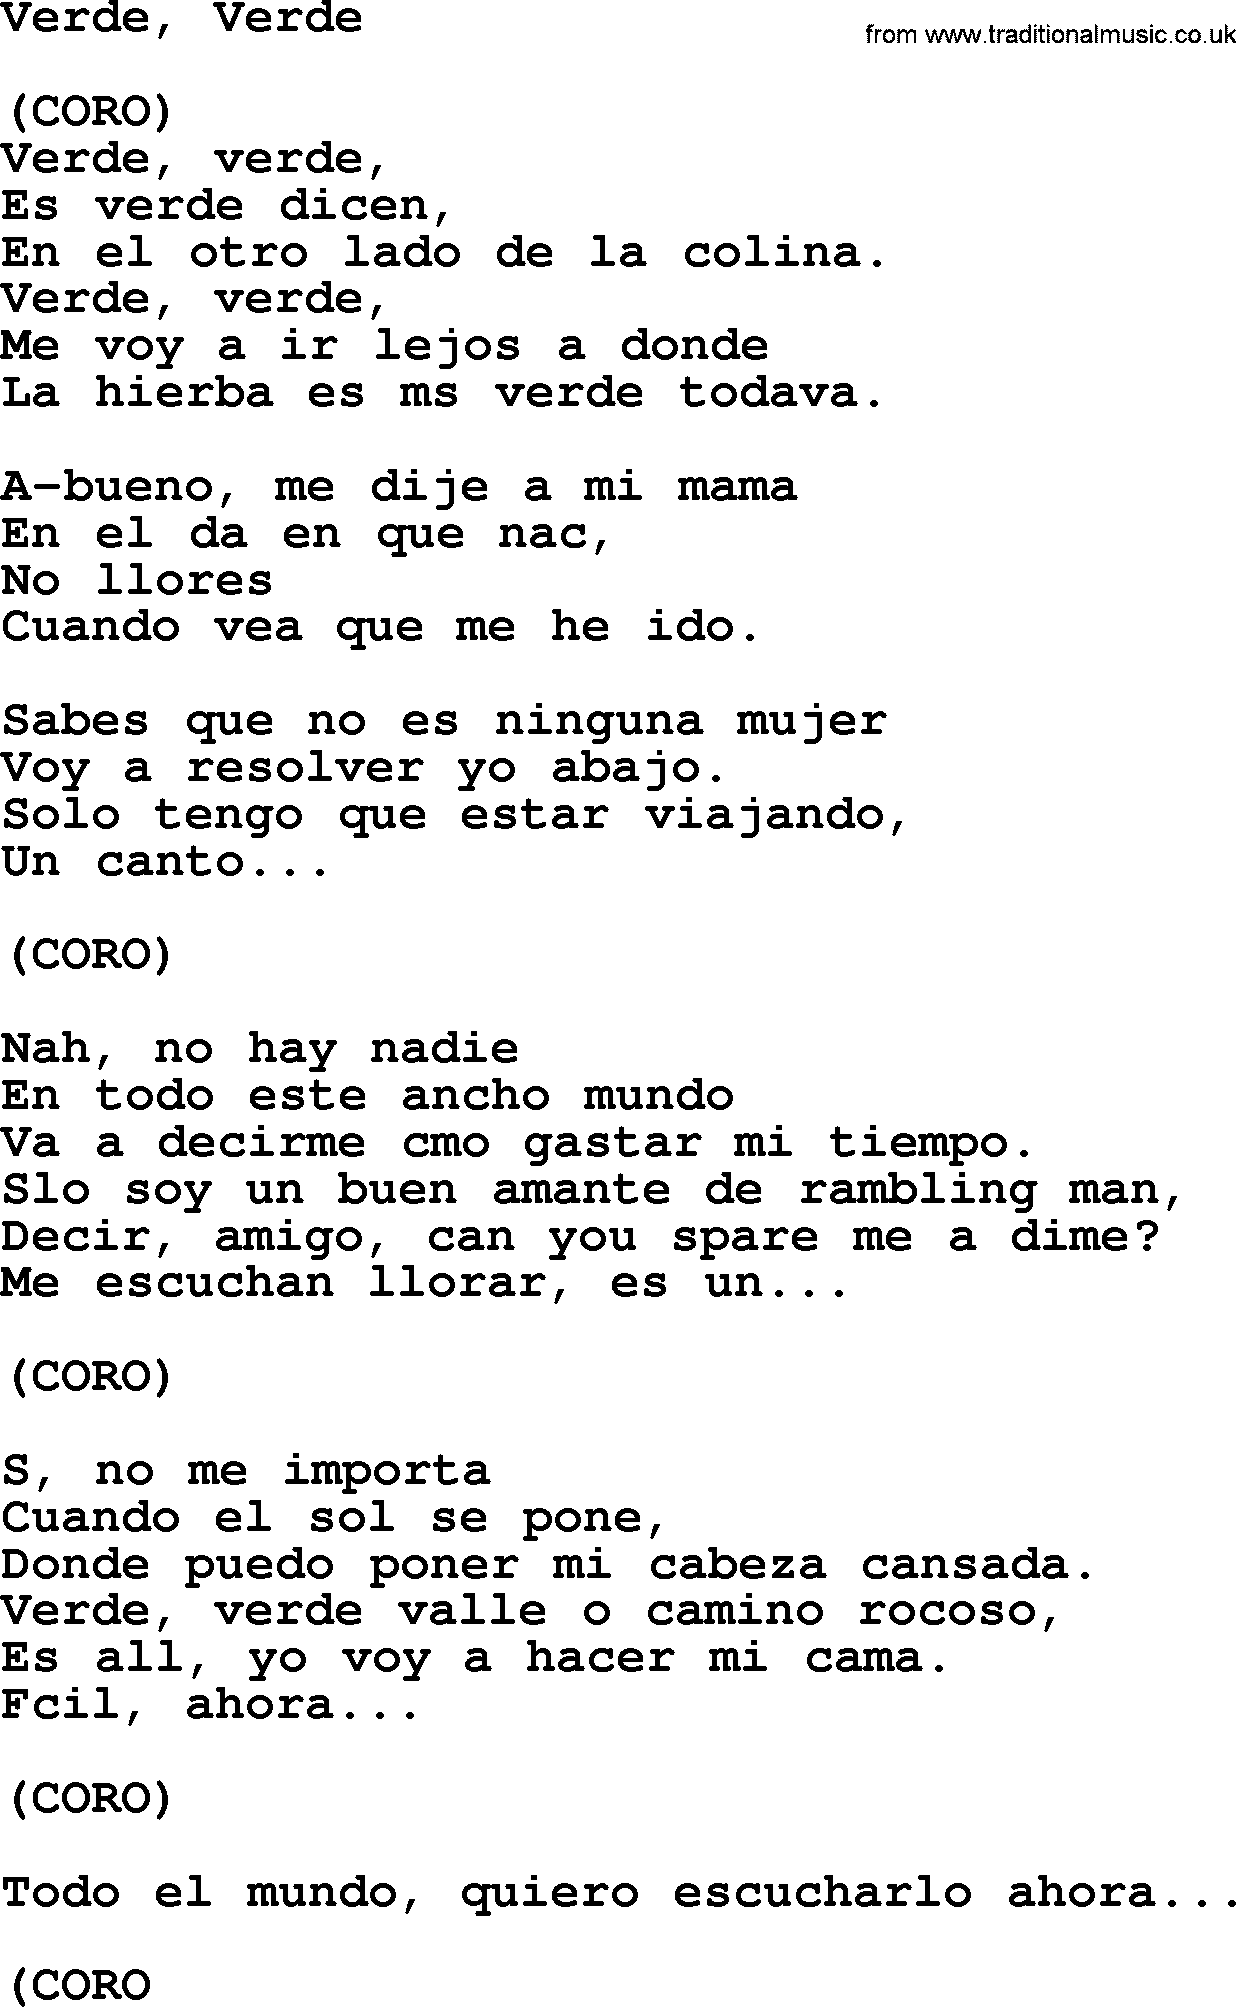 The Byrds song Verde, Verde, lyrics